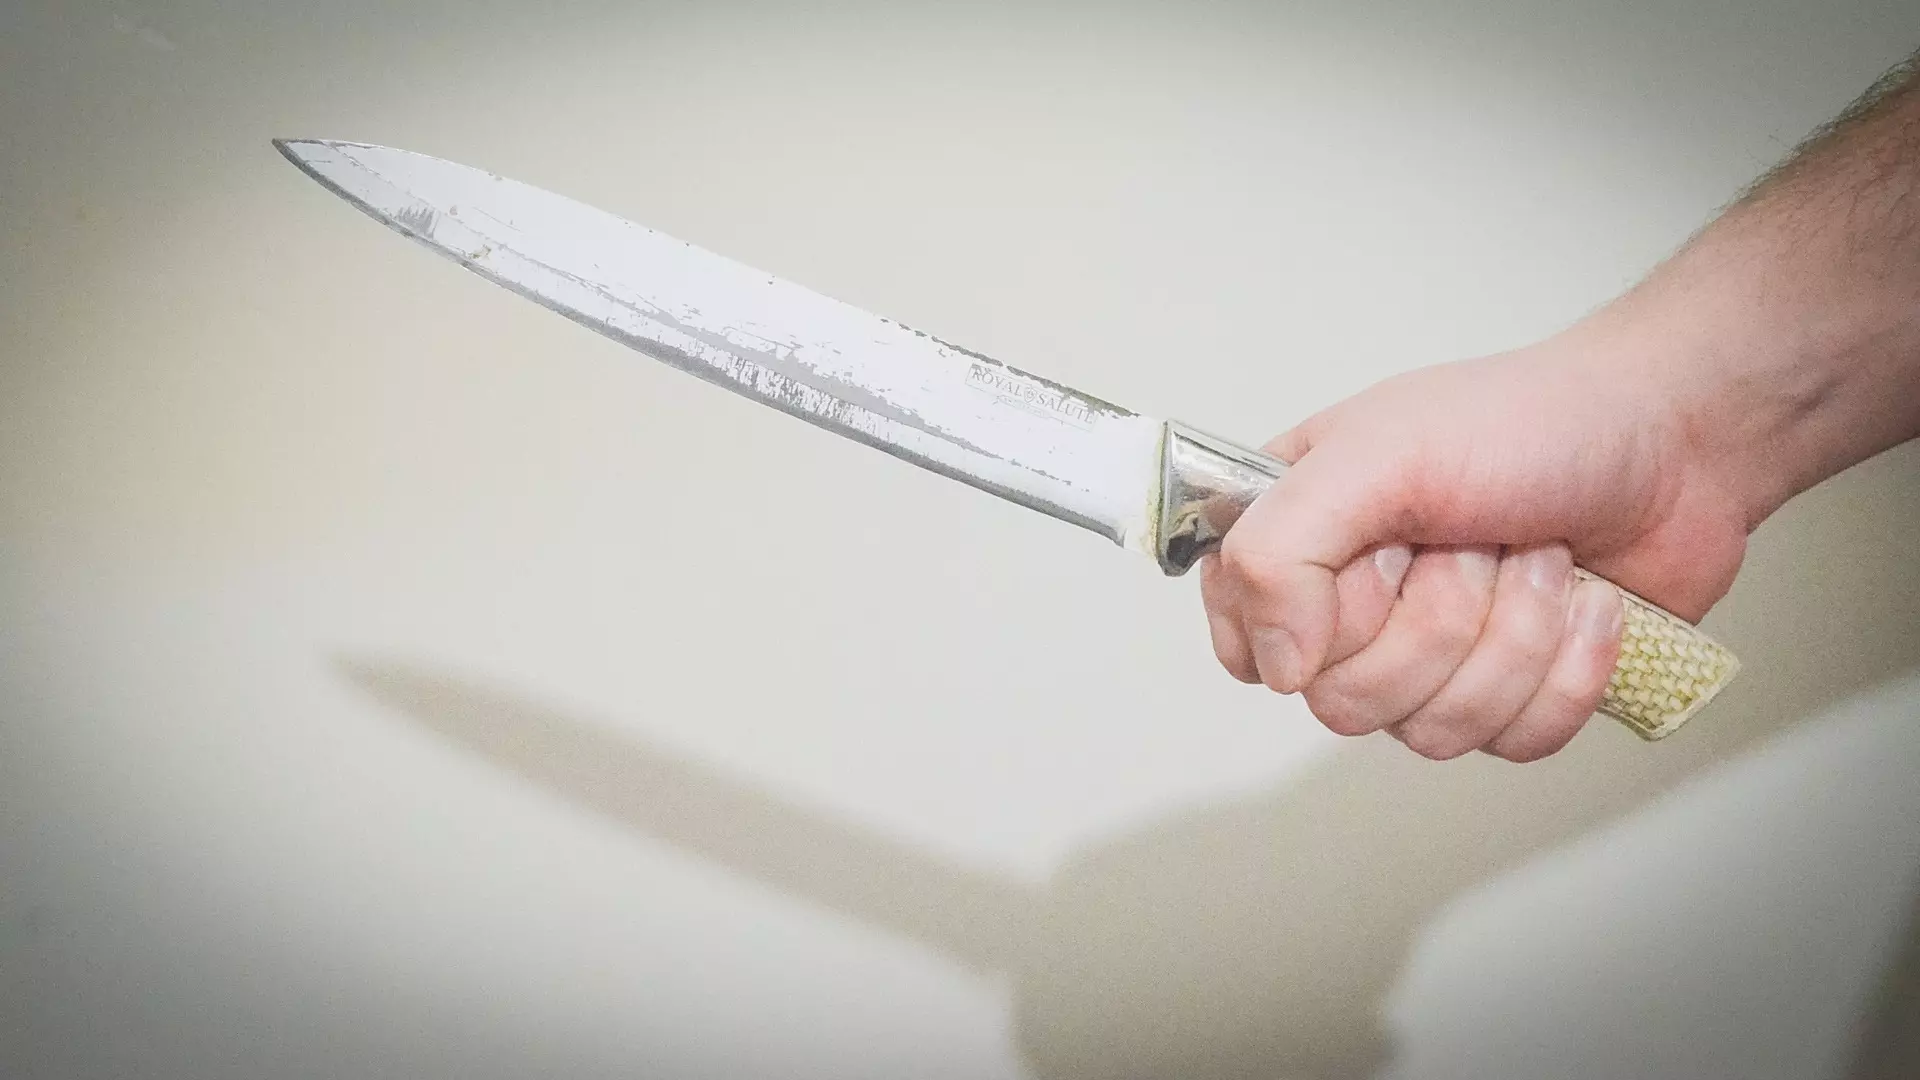 Пьяный мужчина напал с ножом на росгвардейца в Магнитогорске